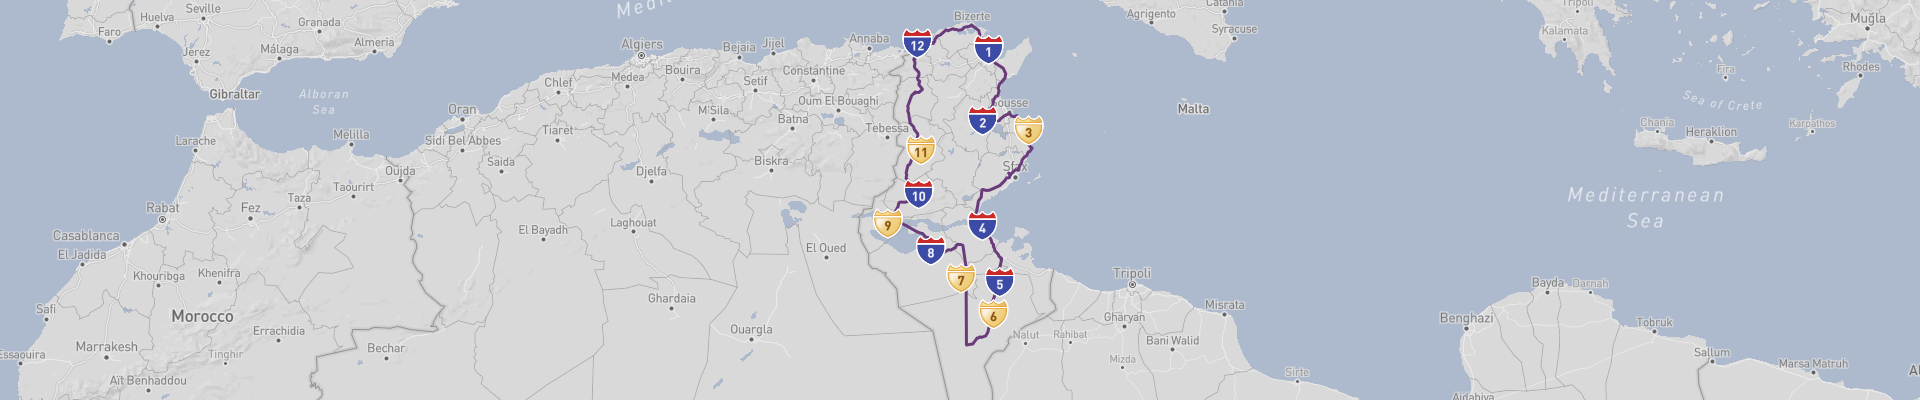 Itinéraire Tunisie 